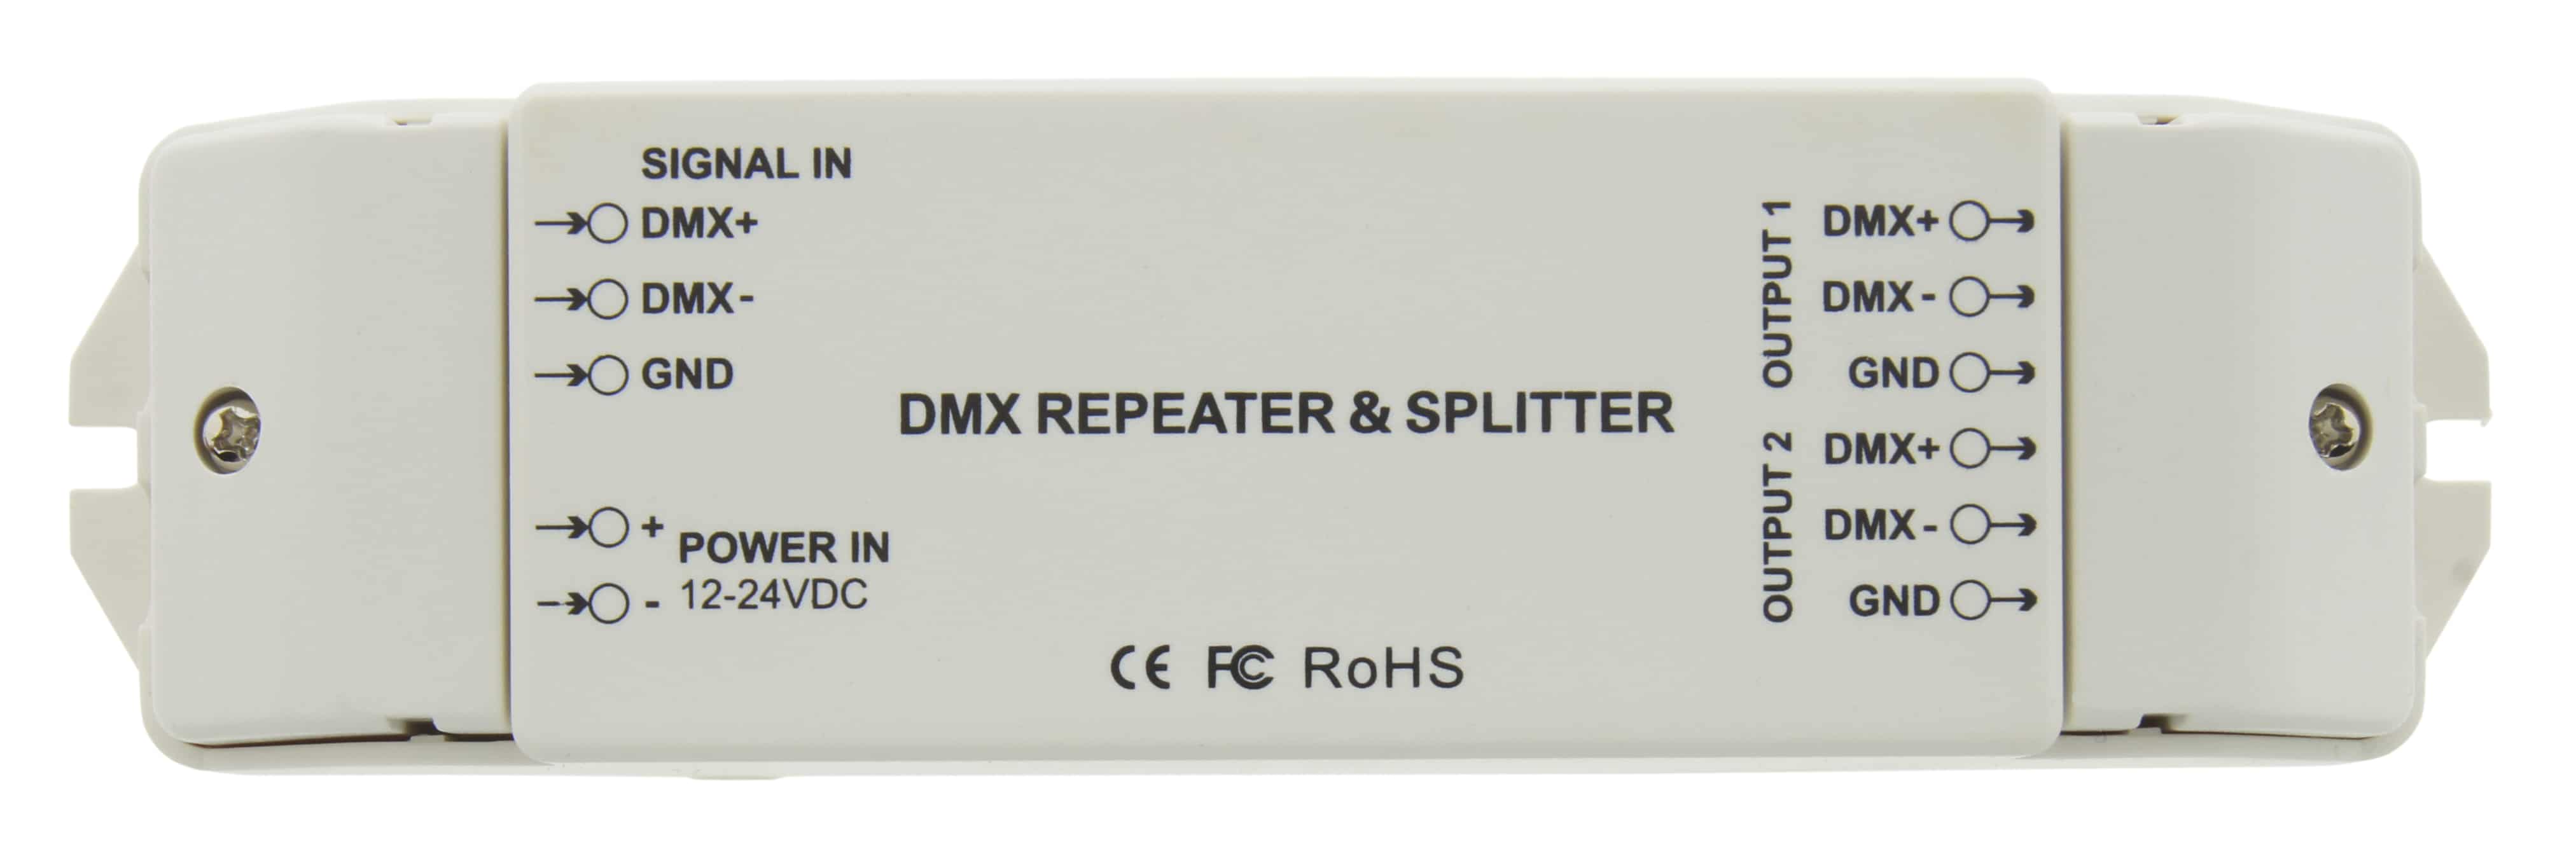 https://autled.com/daten/foto/Produktfoto_DMX-Repeater-Splitter-Verstaerker-Verteiler_1_v1.jpg